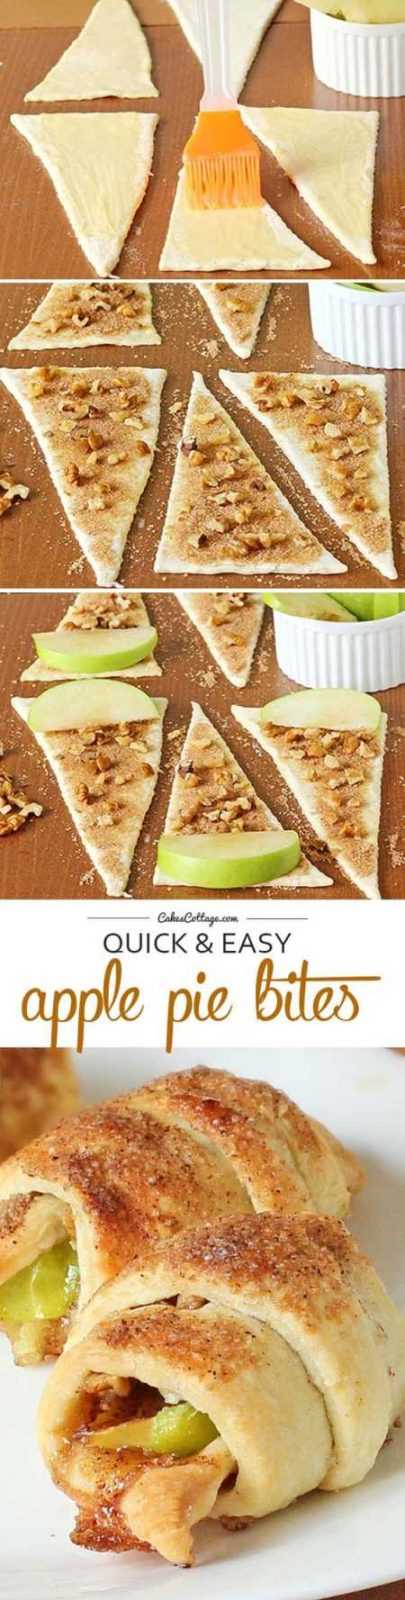 Quick And Easy Apple Pie Bites